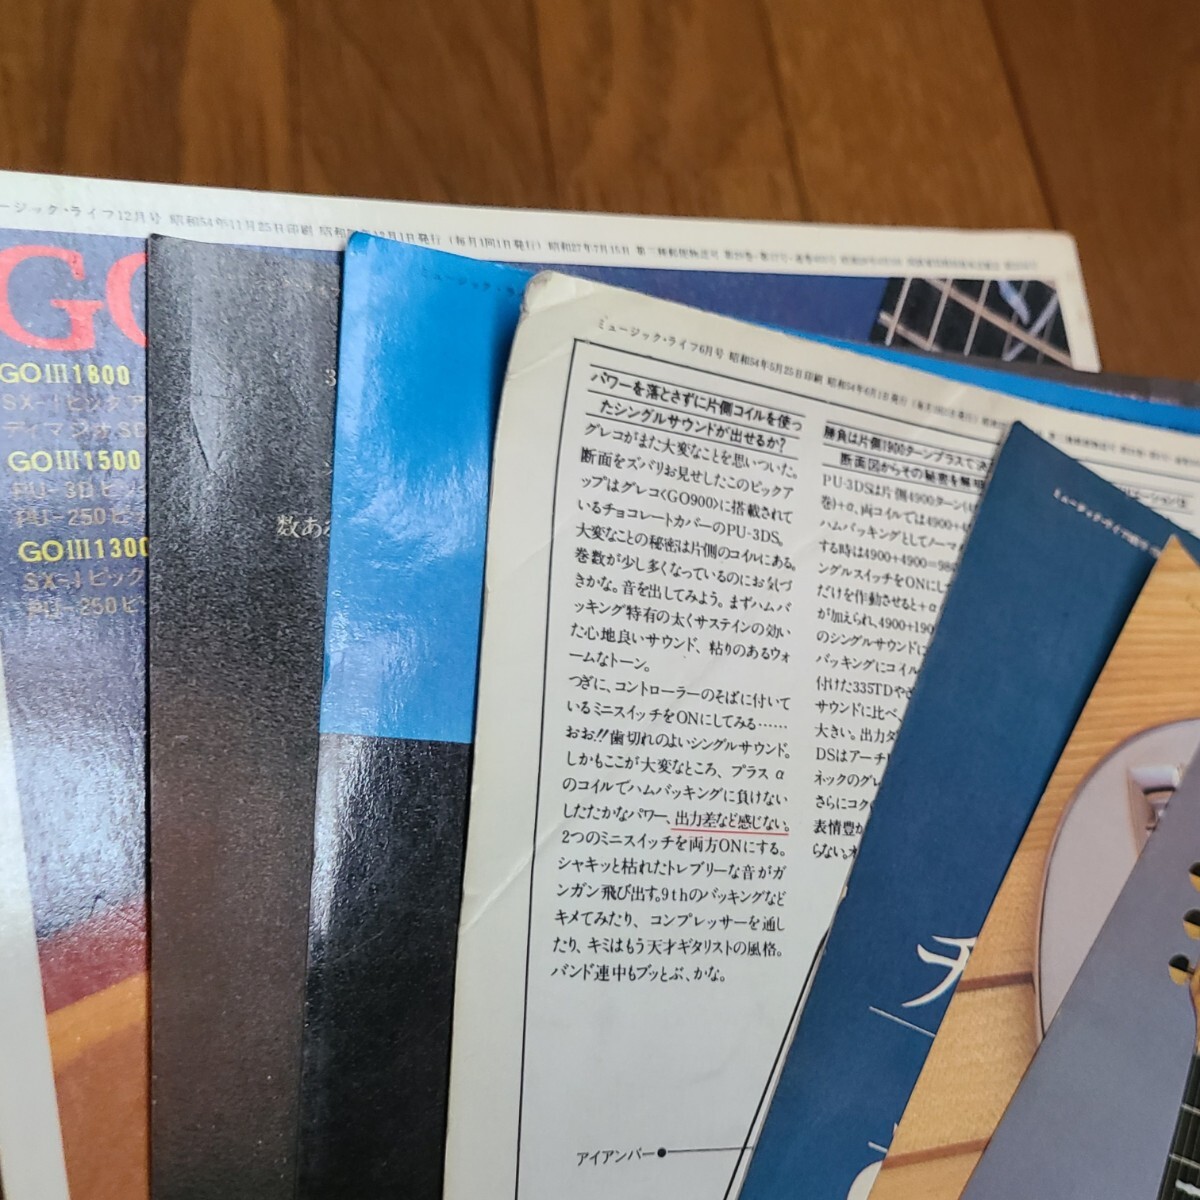 GRECO グレコ ギター広告 1978年 1979年 【切り抜き】GRECO GO GOⅡ GOⅢ モデル※雑誌裏表紙/傷みあり (裏面 日本ギブソン)_画像7